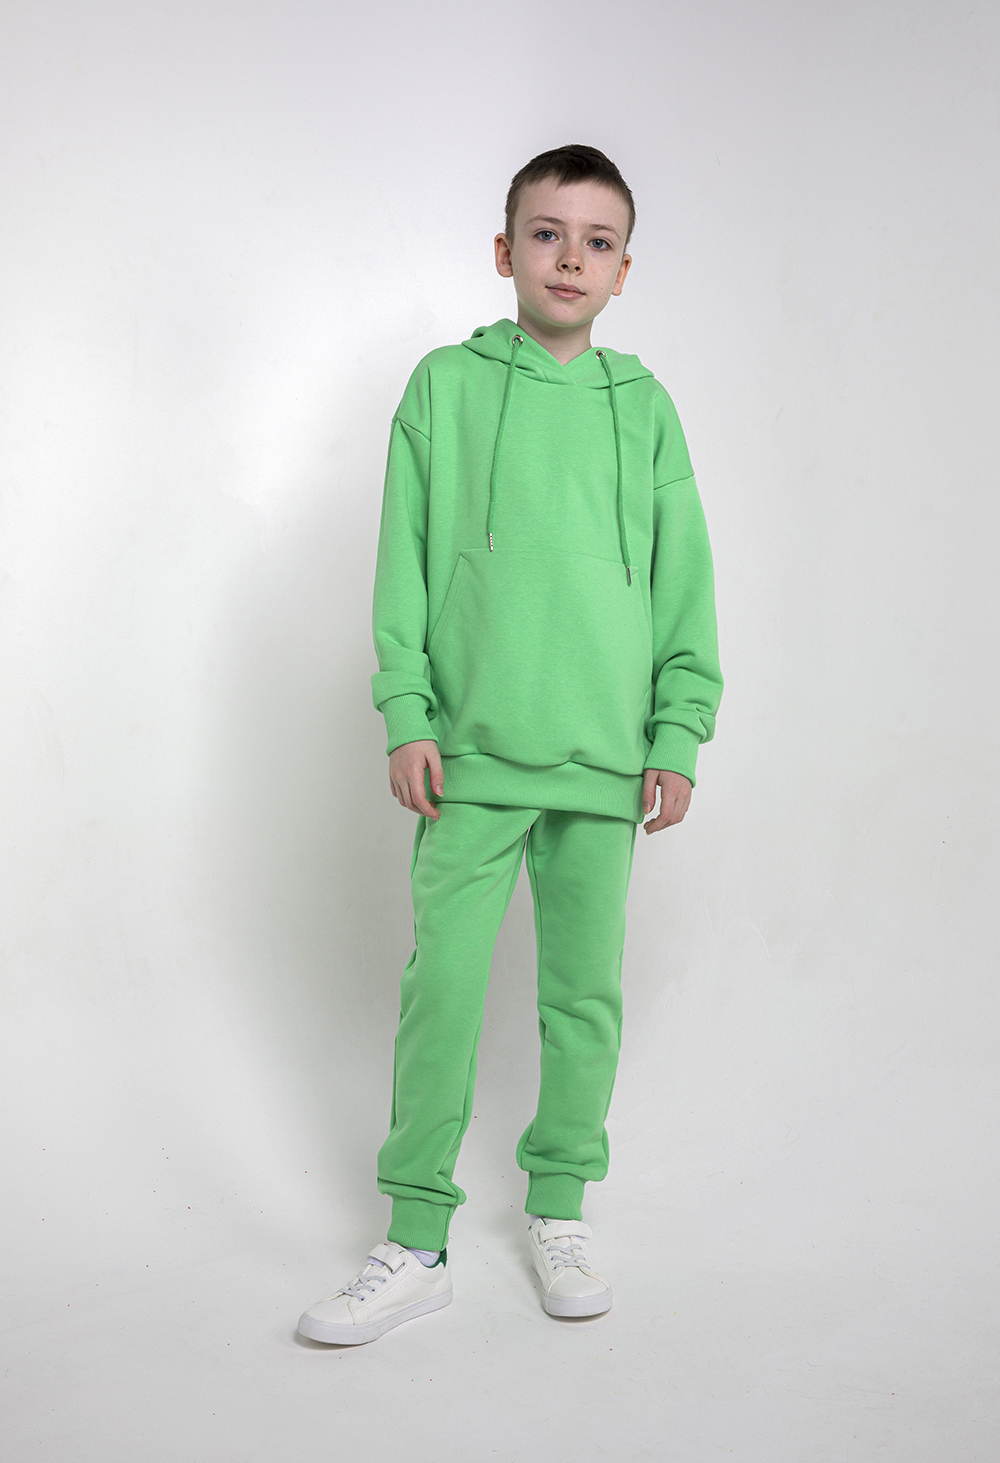 Детский спортивный костюм, МаdbаТ, к0023, р.158, цв. зеленый